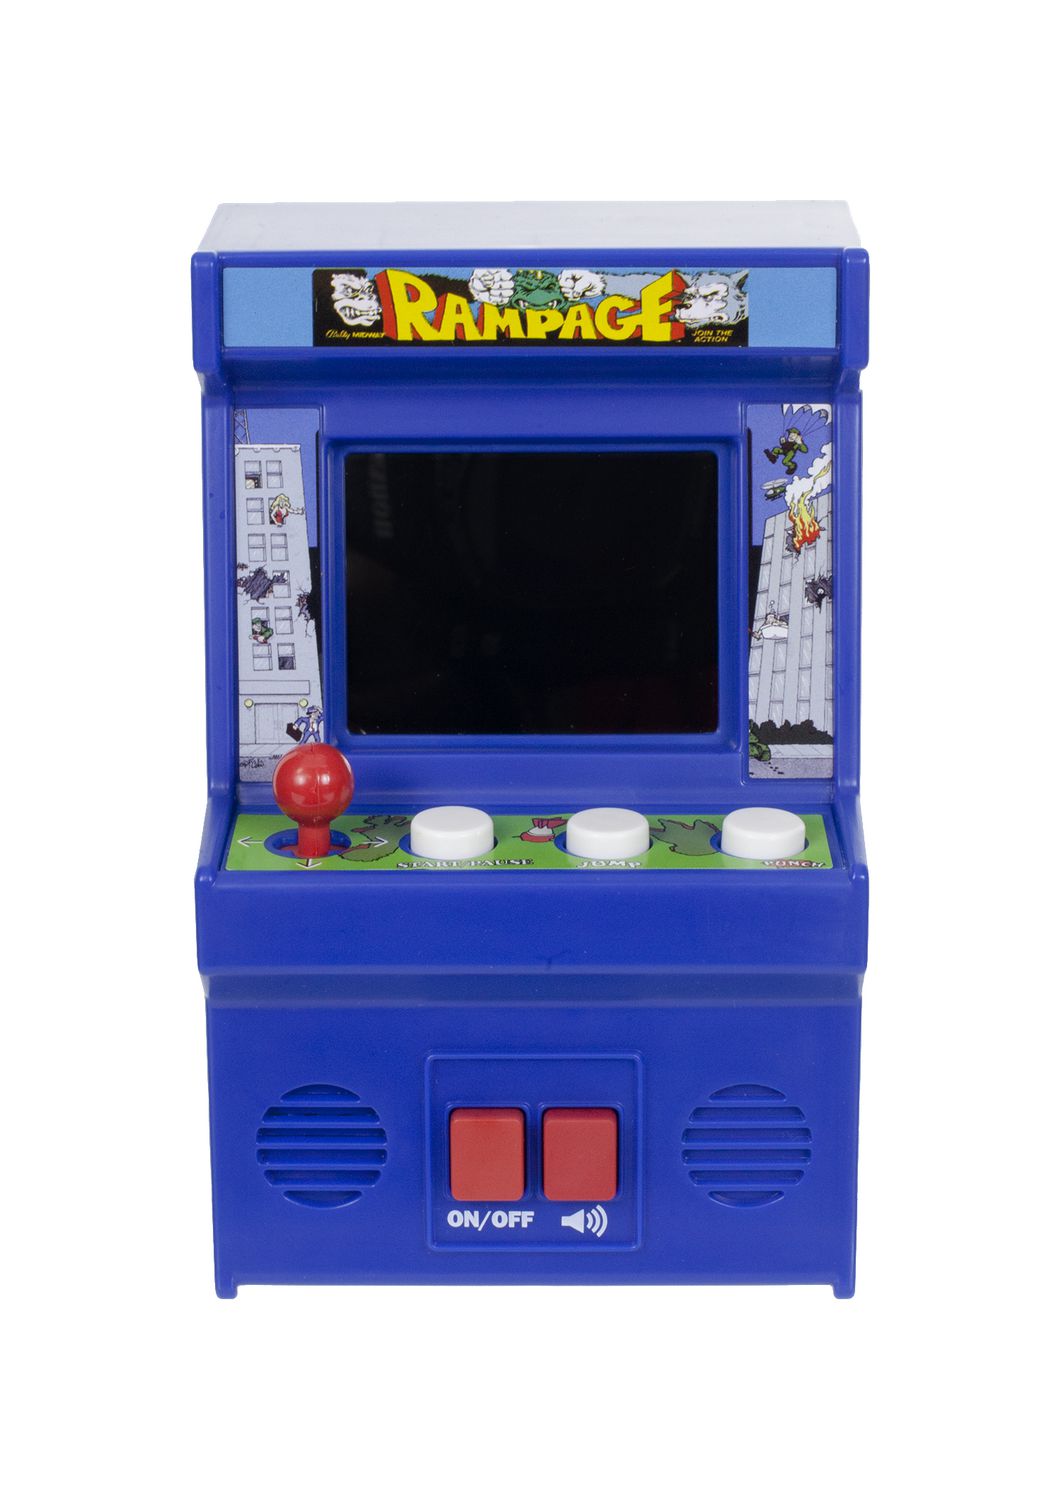 Rampage Mini Arcade Game Walmart Canada